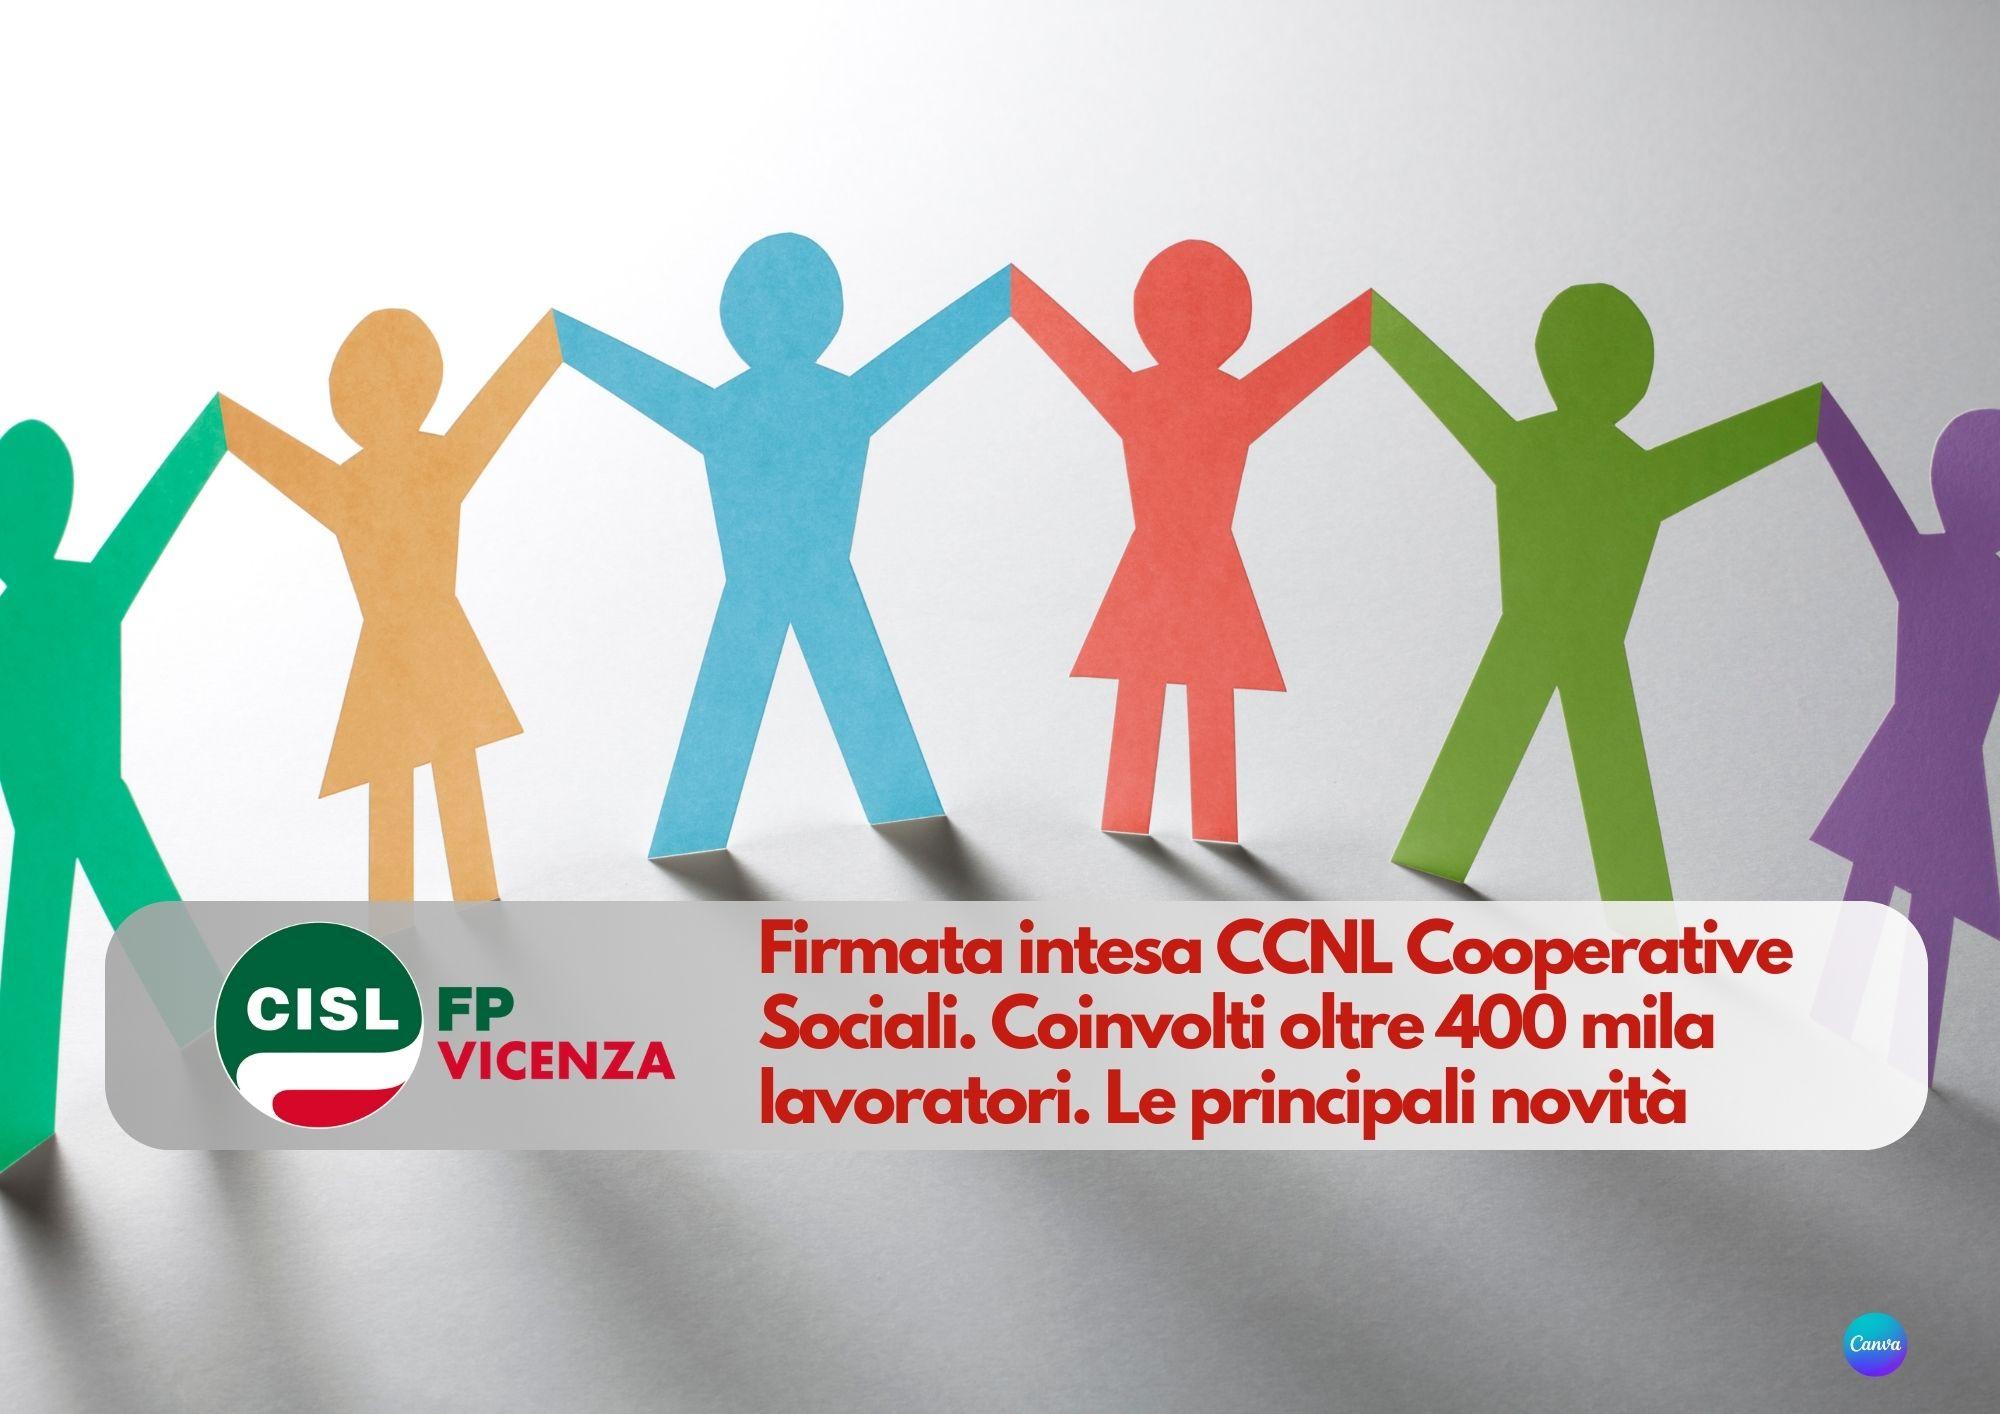 CISL FP Vicenza. Firmata intesa CCNL Cooperative Sociali. Coinvolti oltre 400 mila lavoratori. Le novità